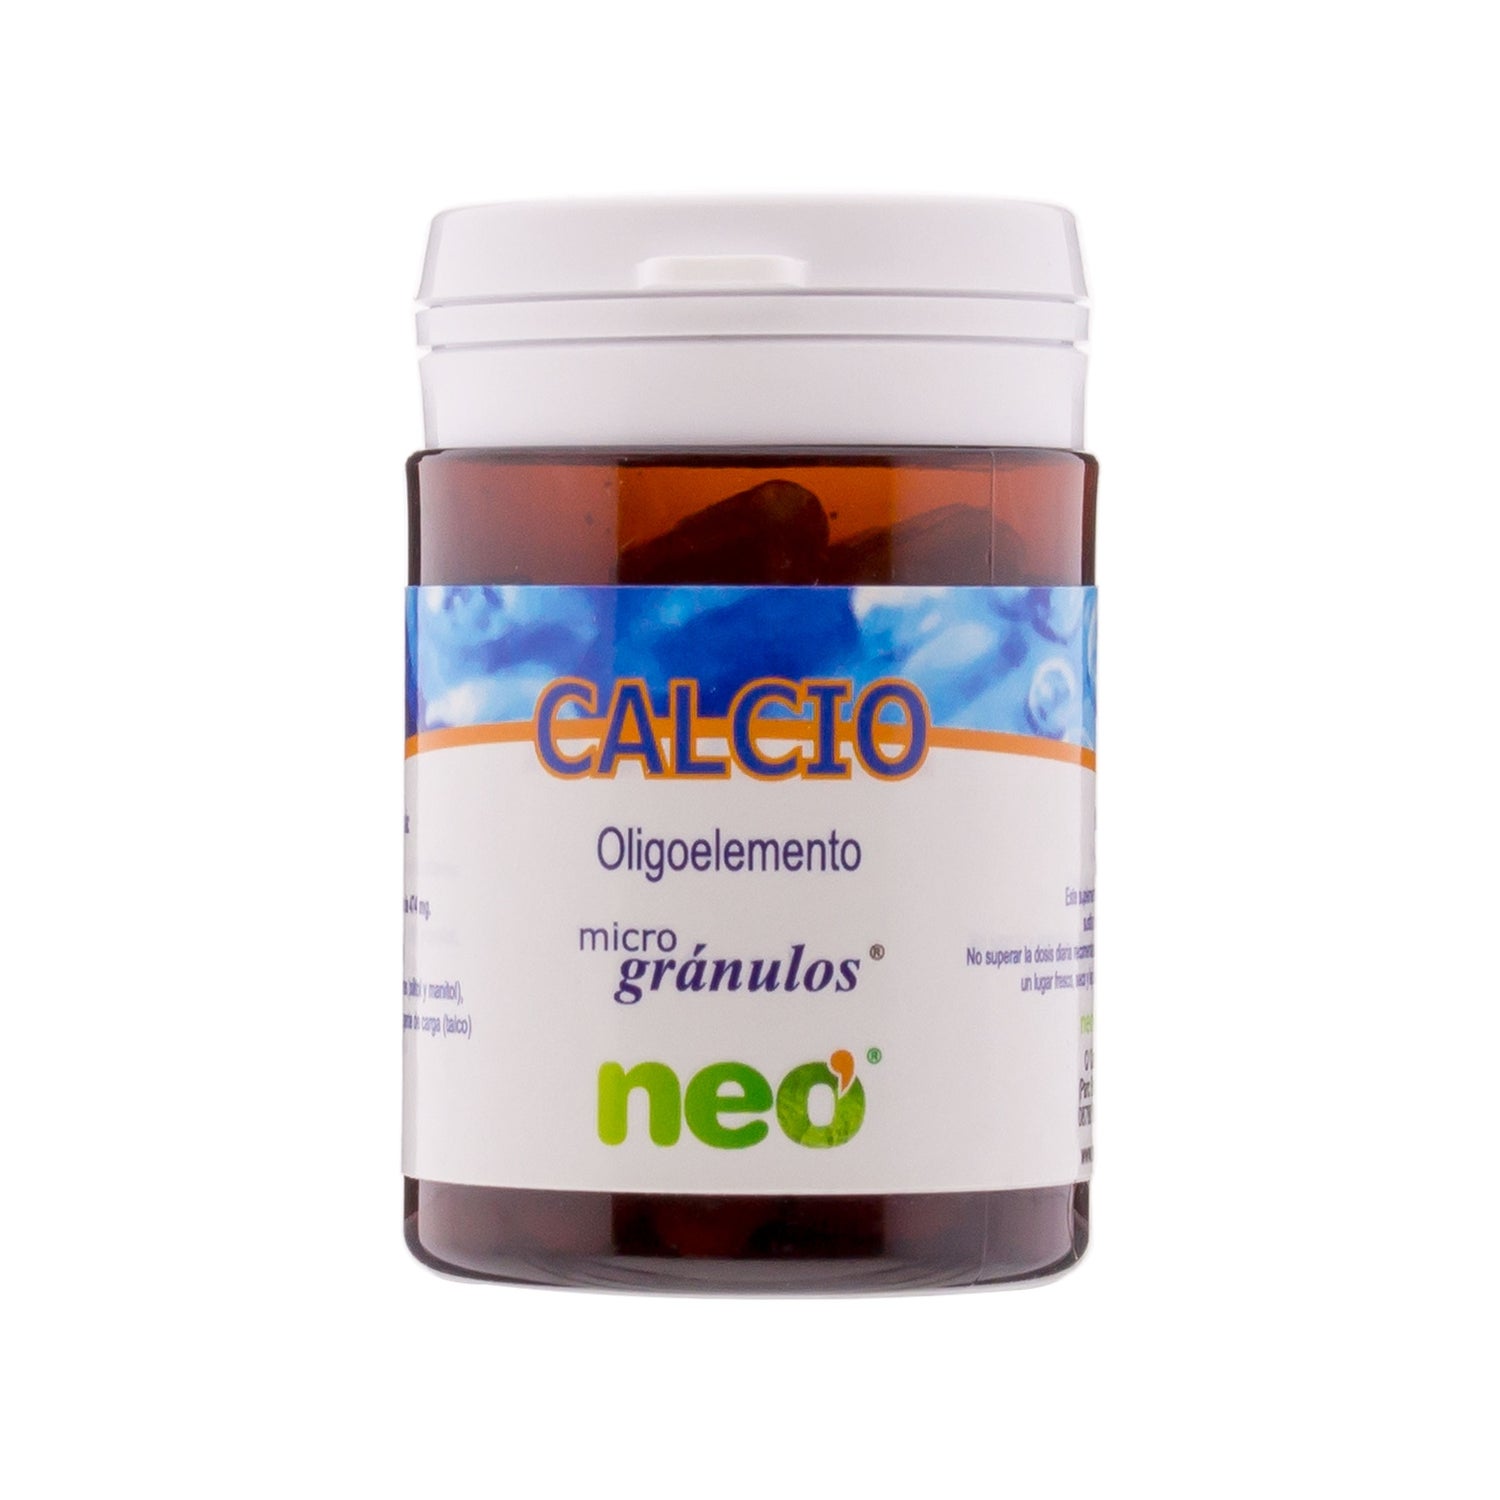 Buy Calcium 50 capsules Neo